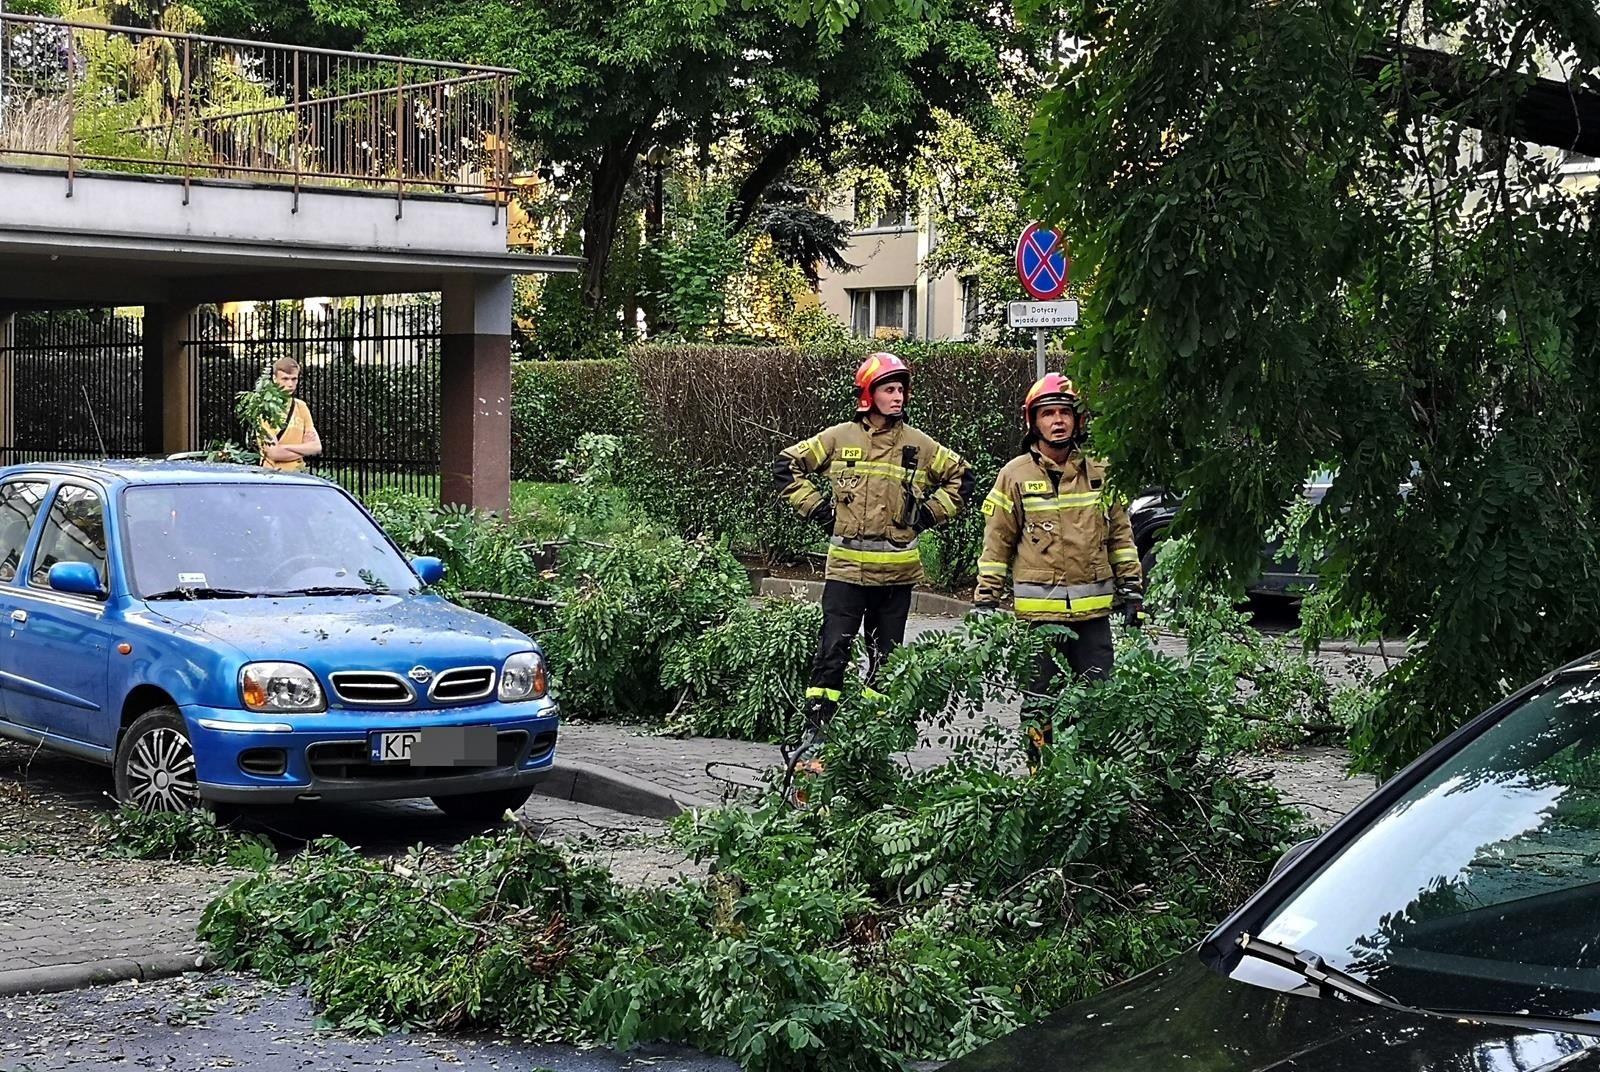 Kraków. Drzewo spadło na samochód. Trwa usuwanie szkód